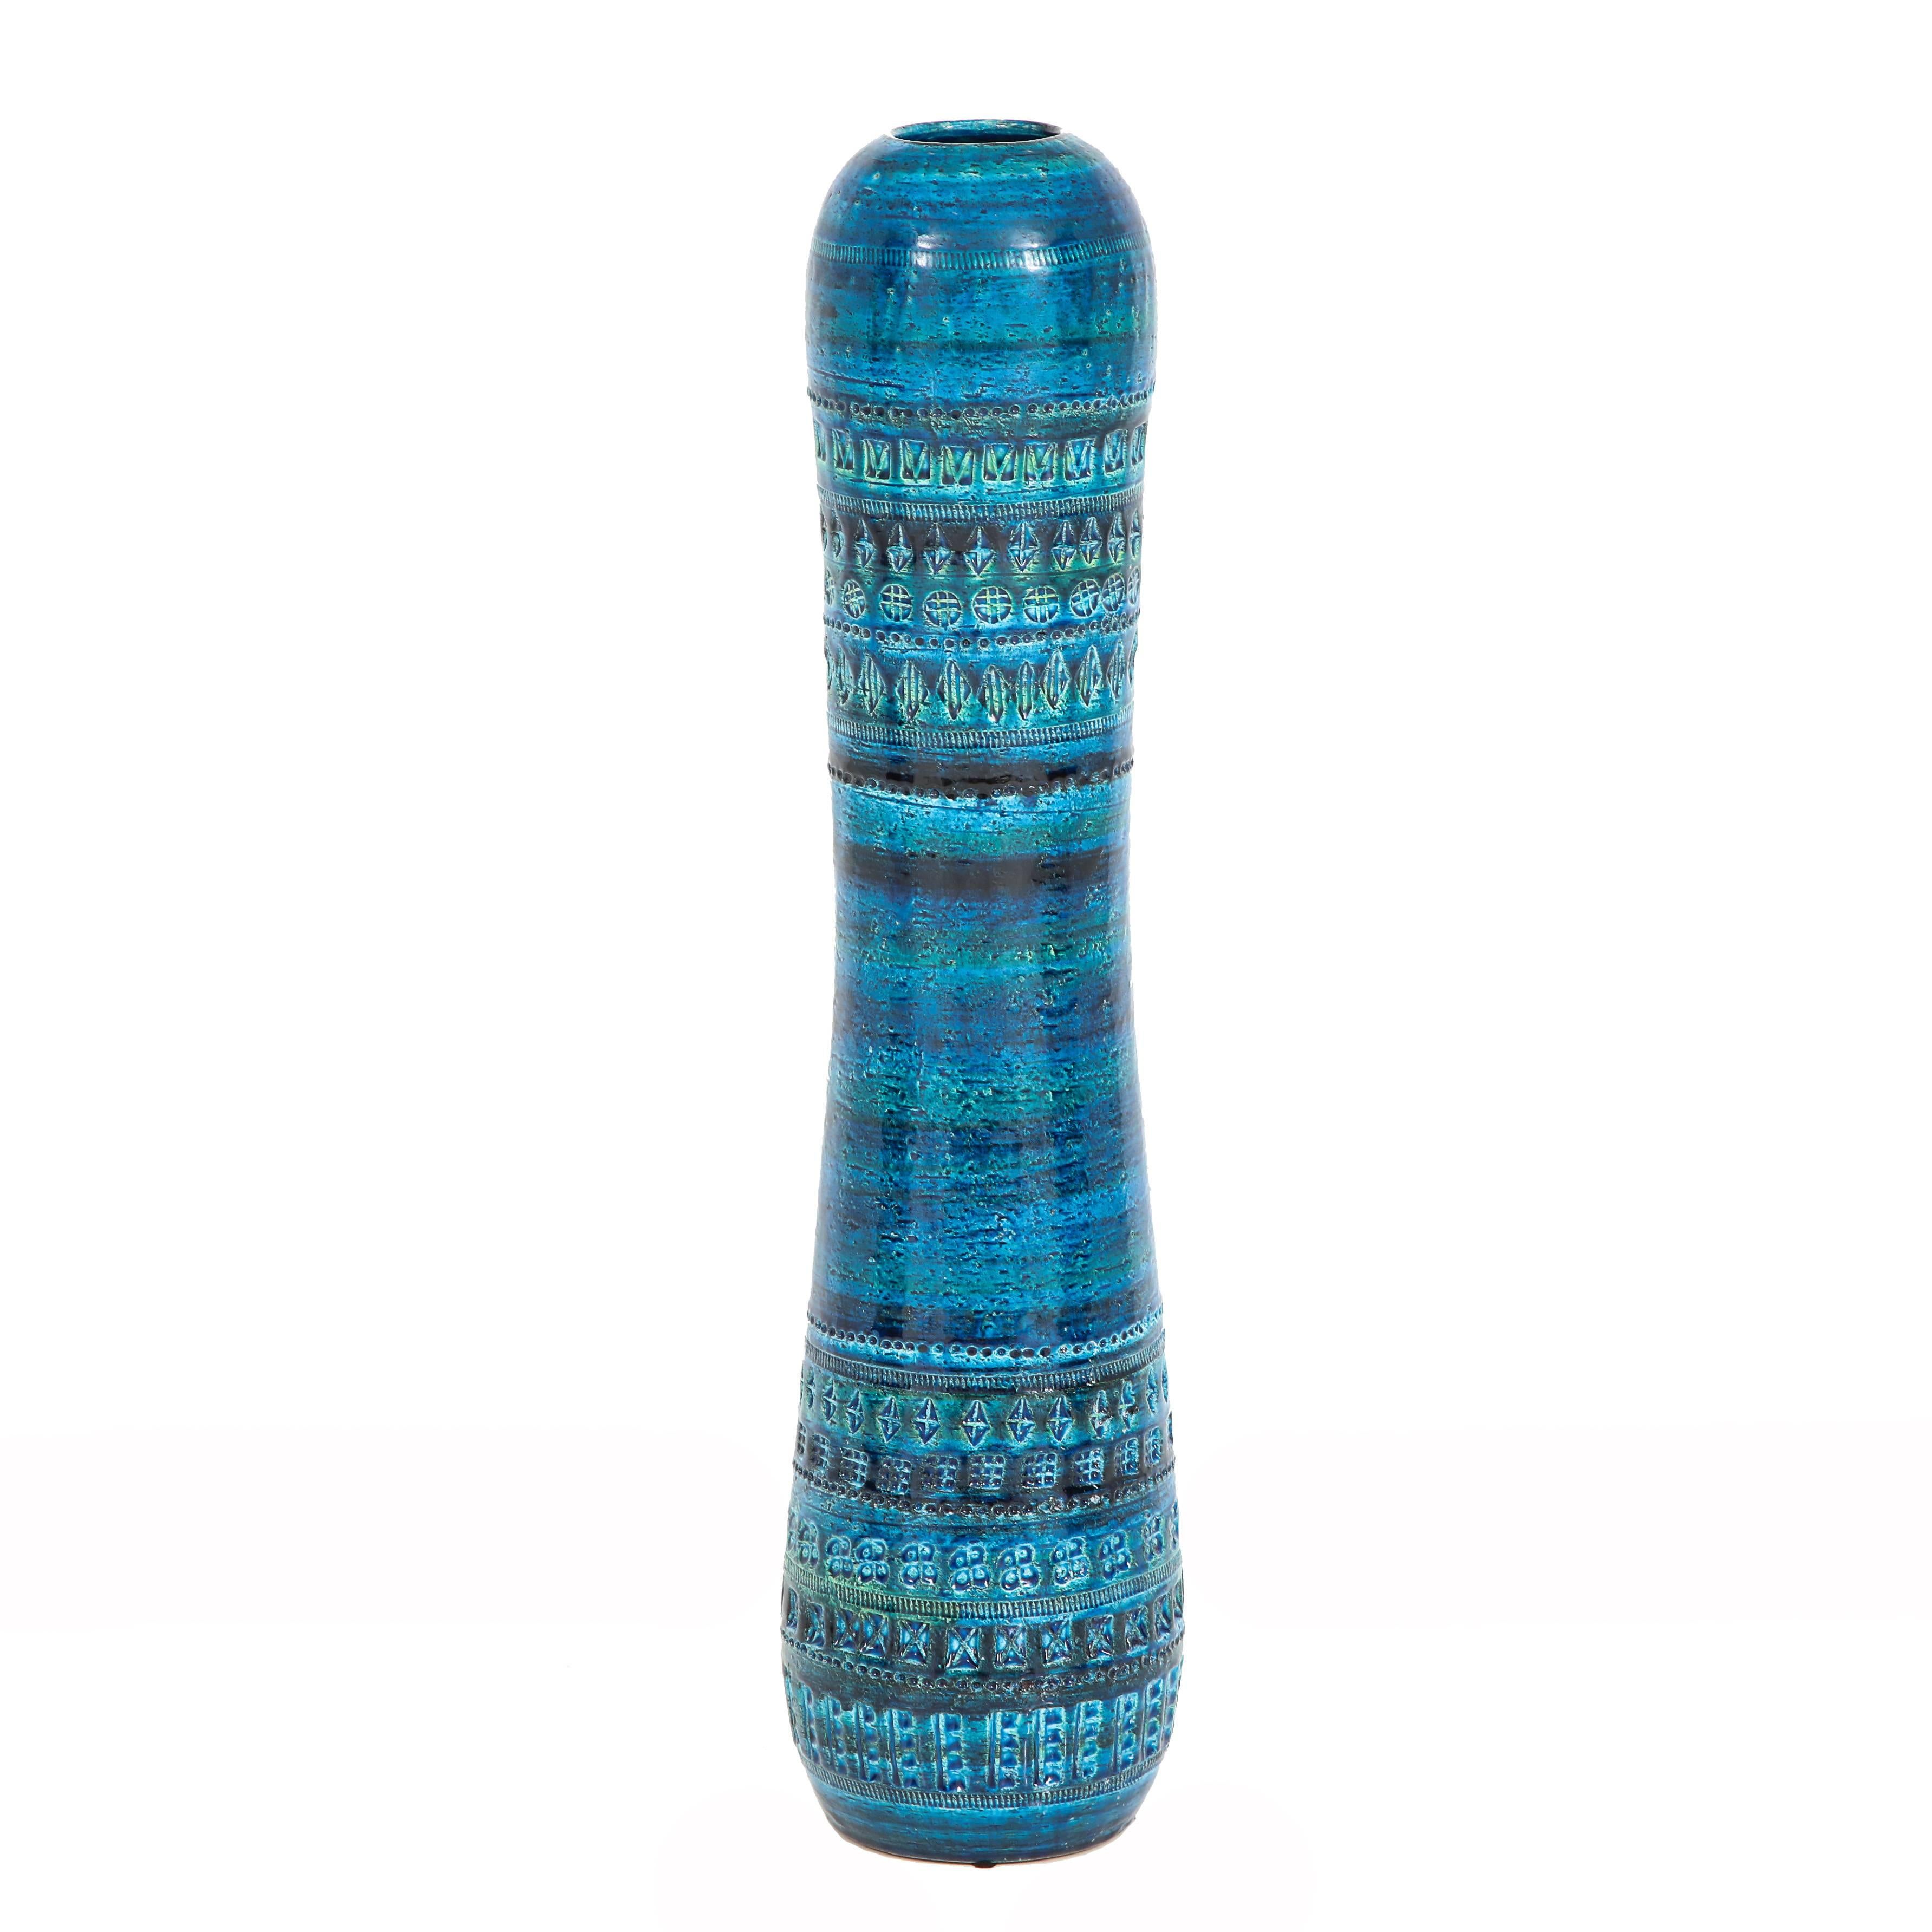 Modern Aldo Londi Bitossi Ceramic Vase Rimini Blue Signed, Italy, 1960s